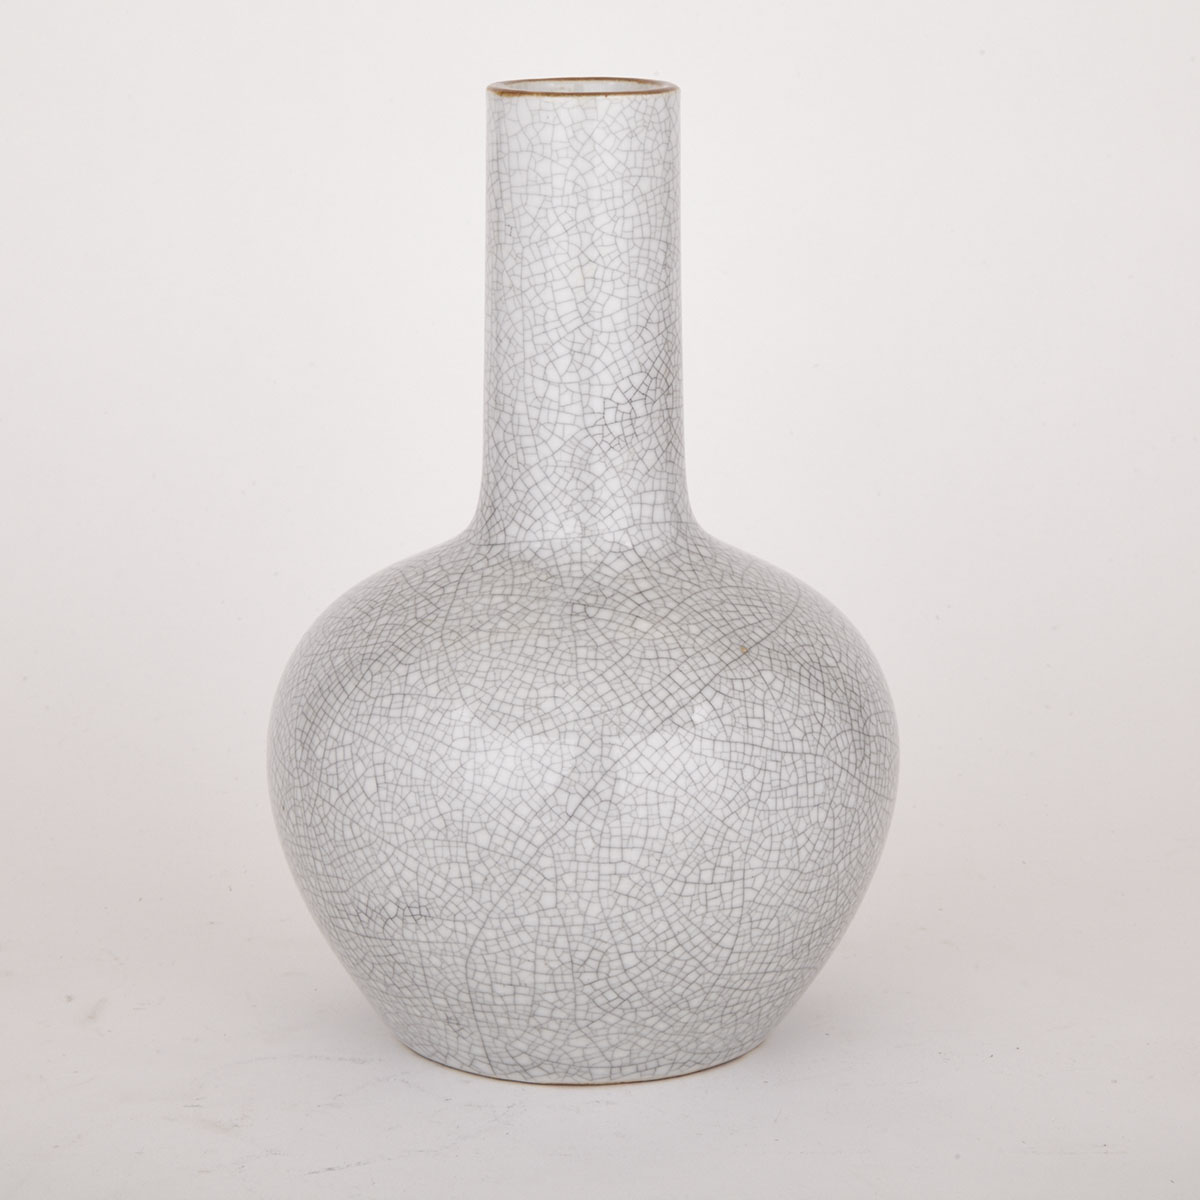 White Crackle Glazed Vase, 19th/20th C.